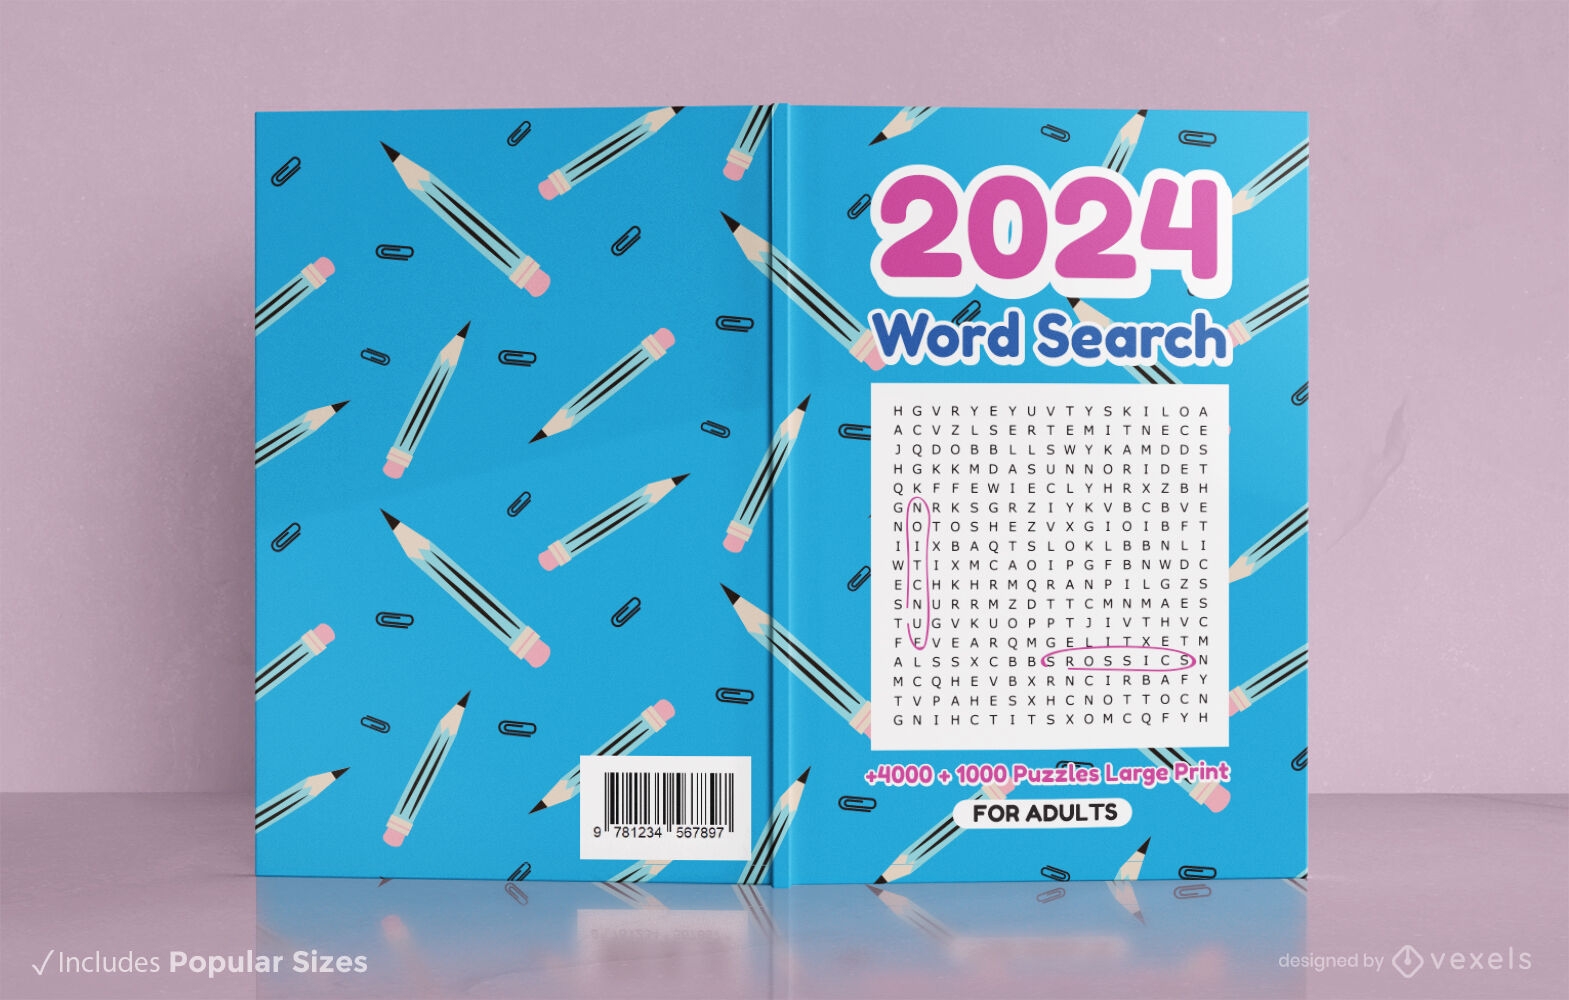 Diseño de portada de libro de búsqueda de palabras con patrones de lápiz 2024.